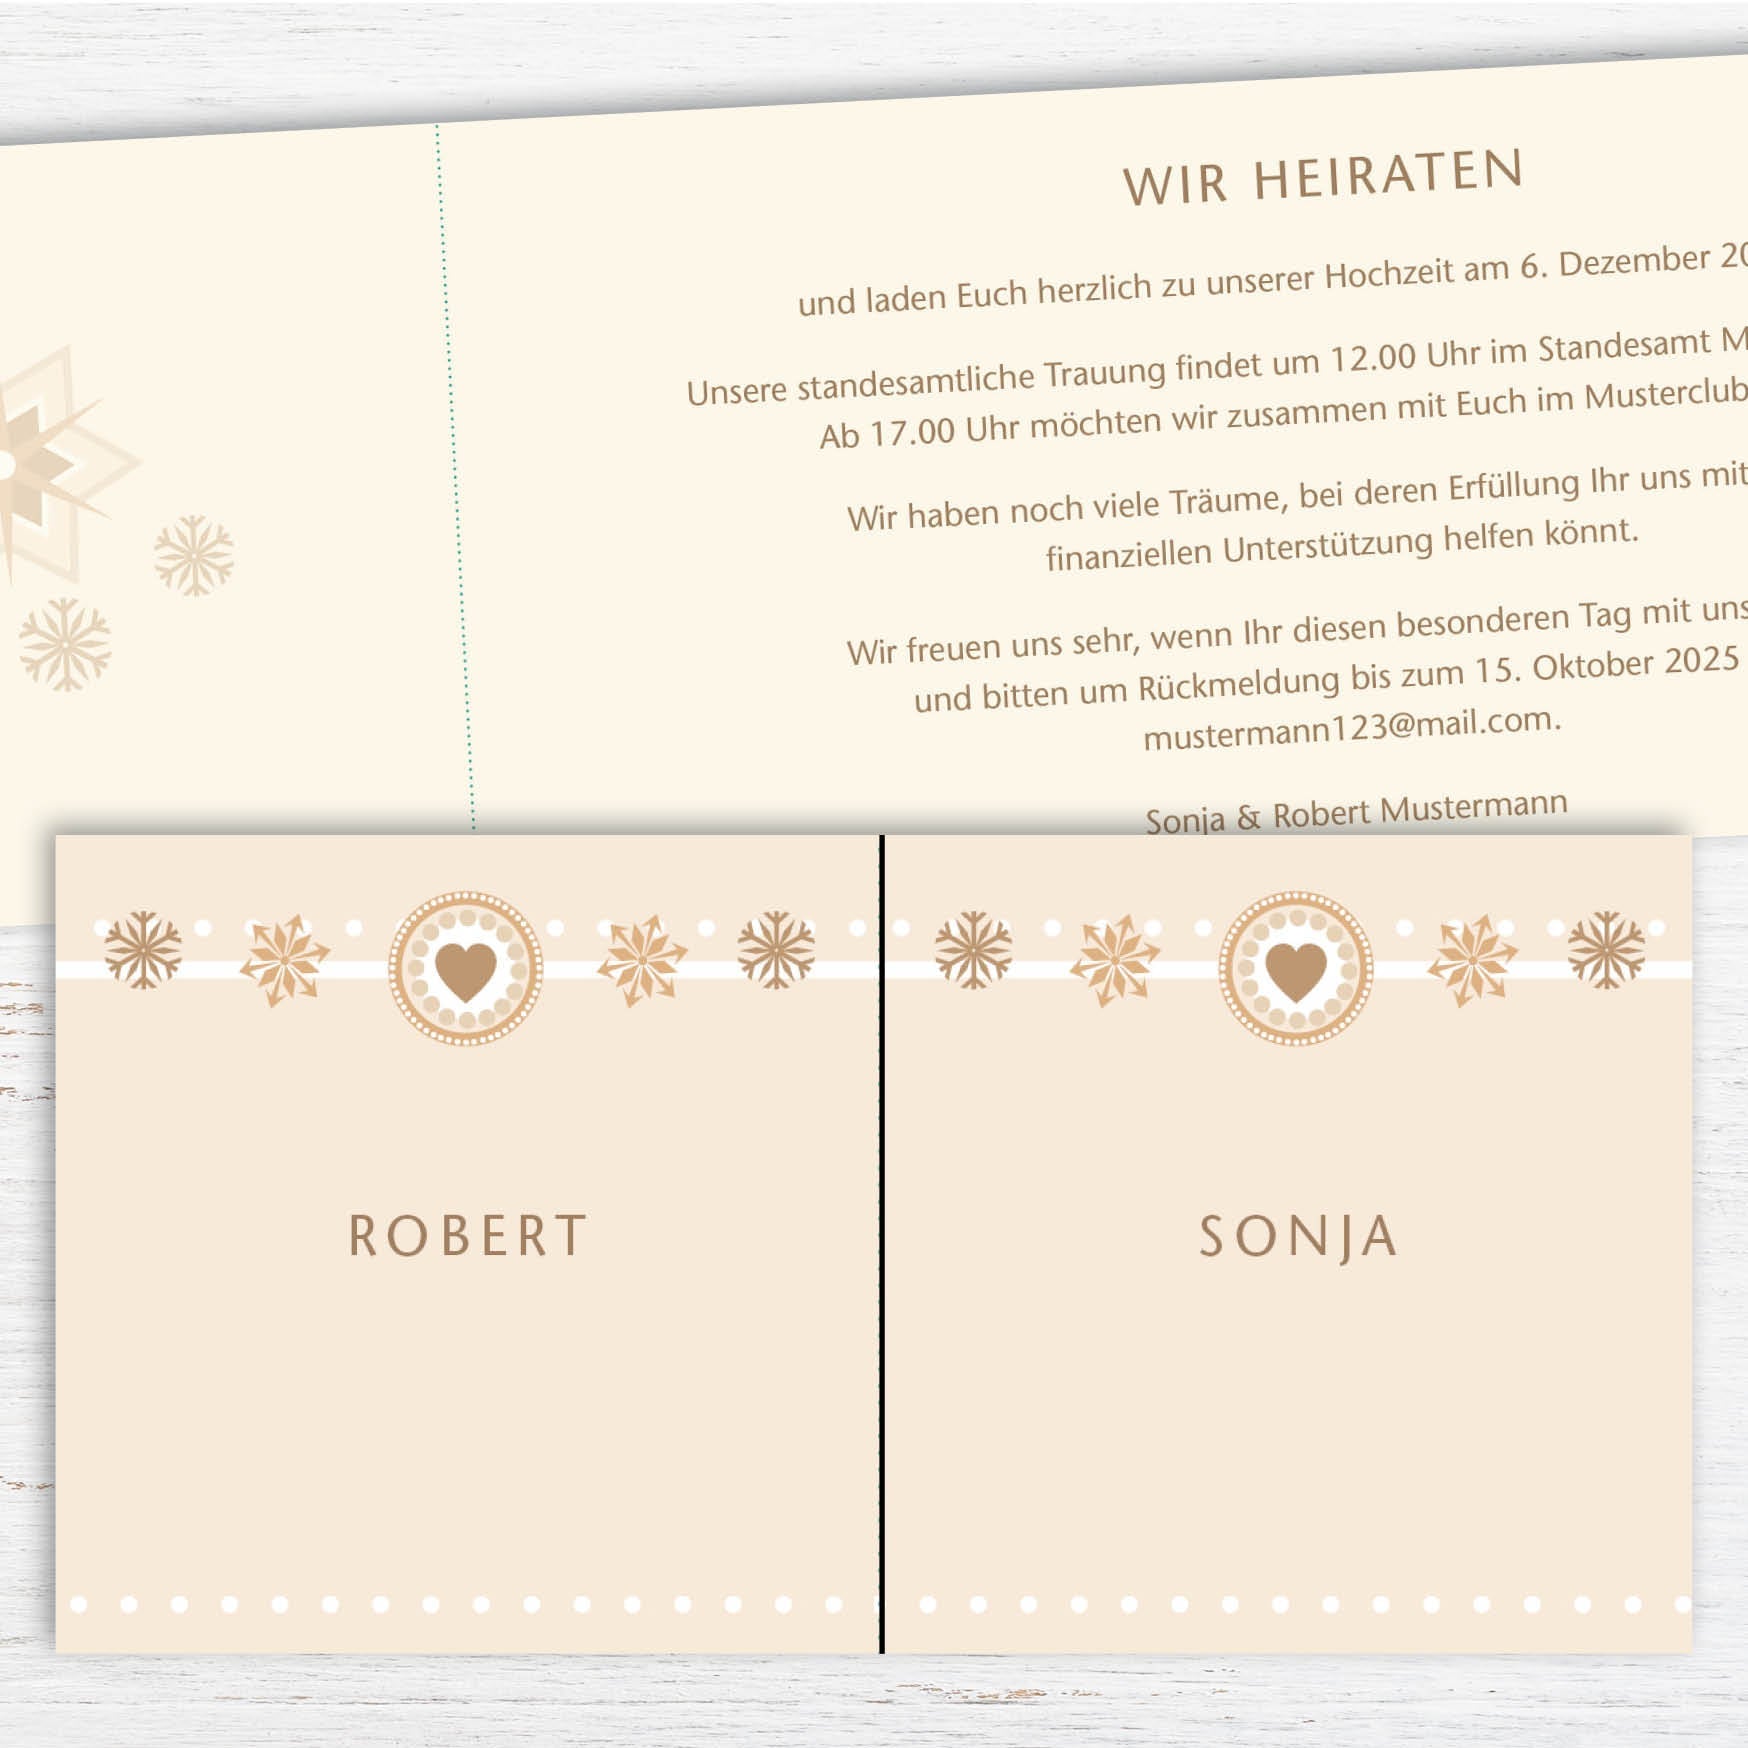 Einladungskarte zur Hochzeit: Winter Hochzeit Individuelle Einladung